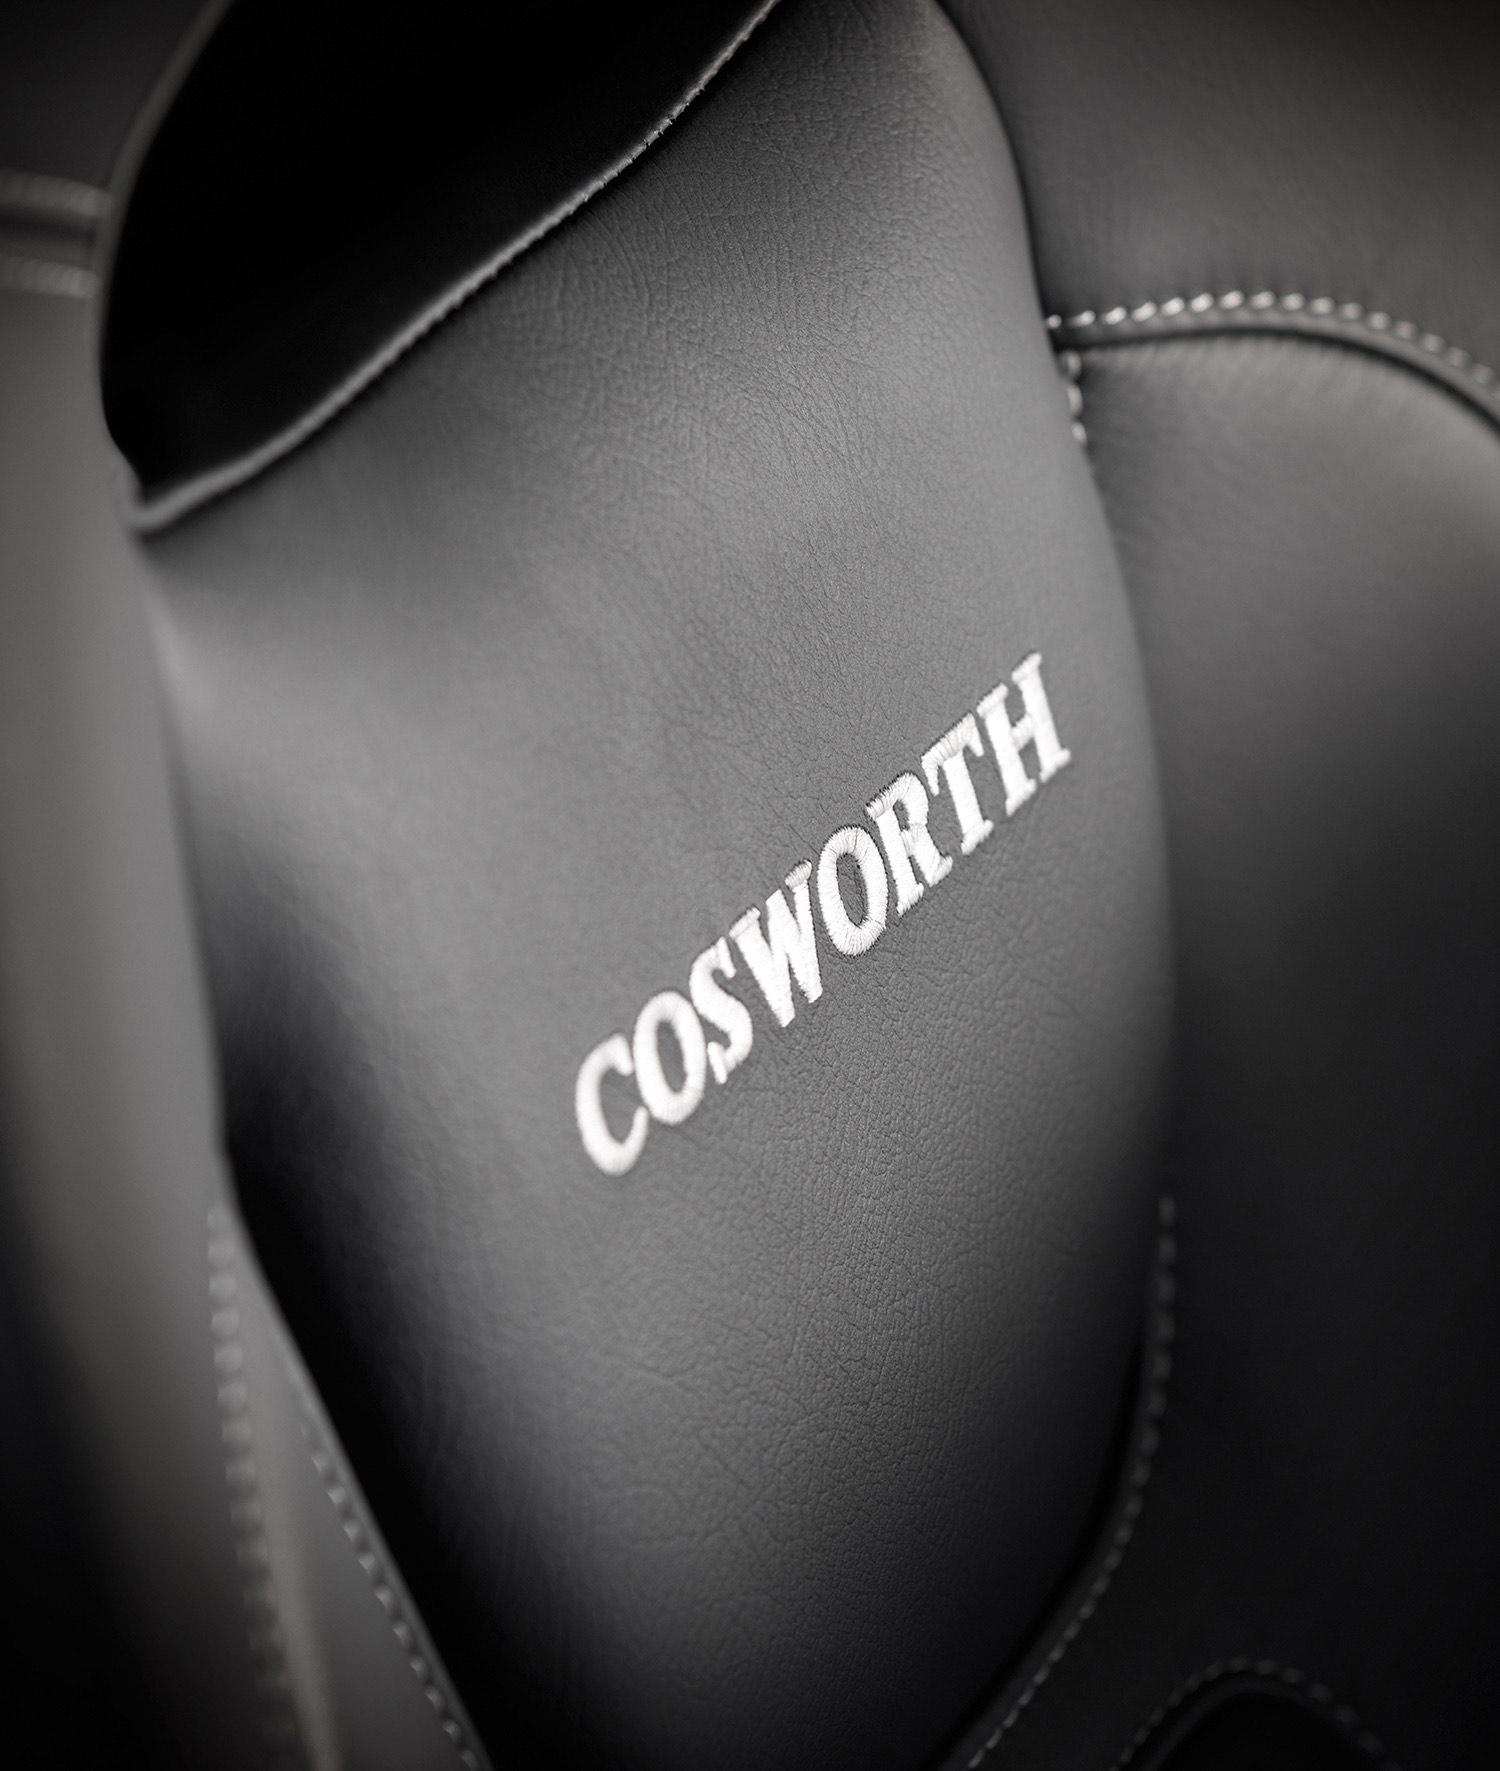 「インプレッサWRX STi CS400 Cosworth」とは 〜 画像11